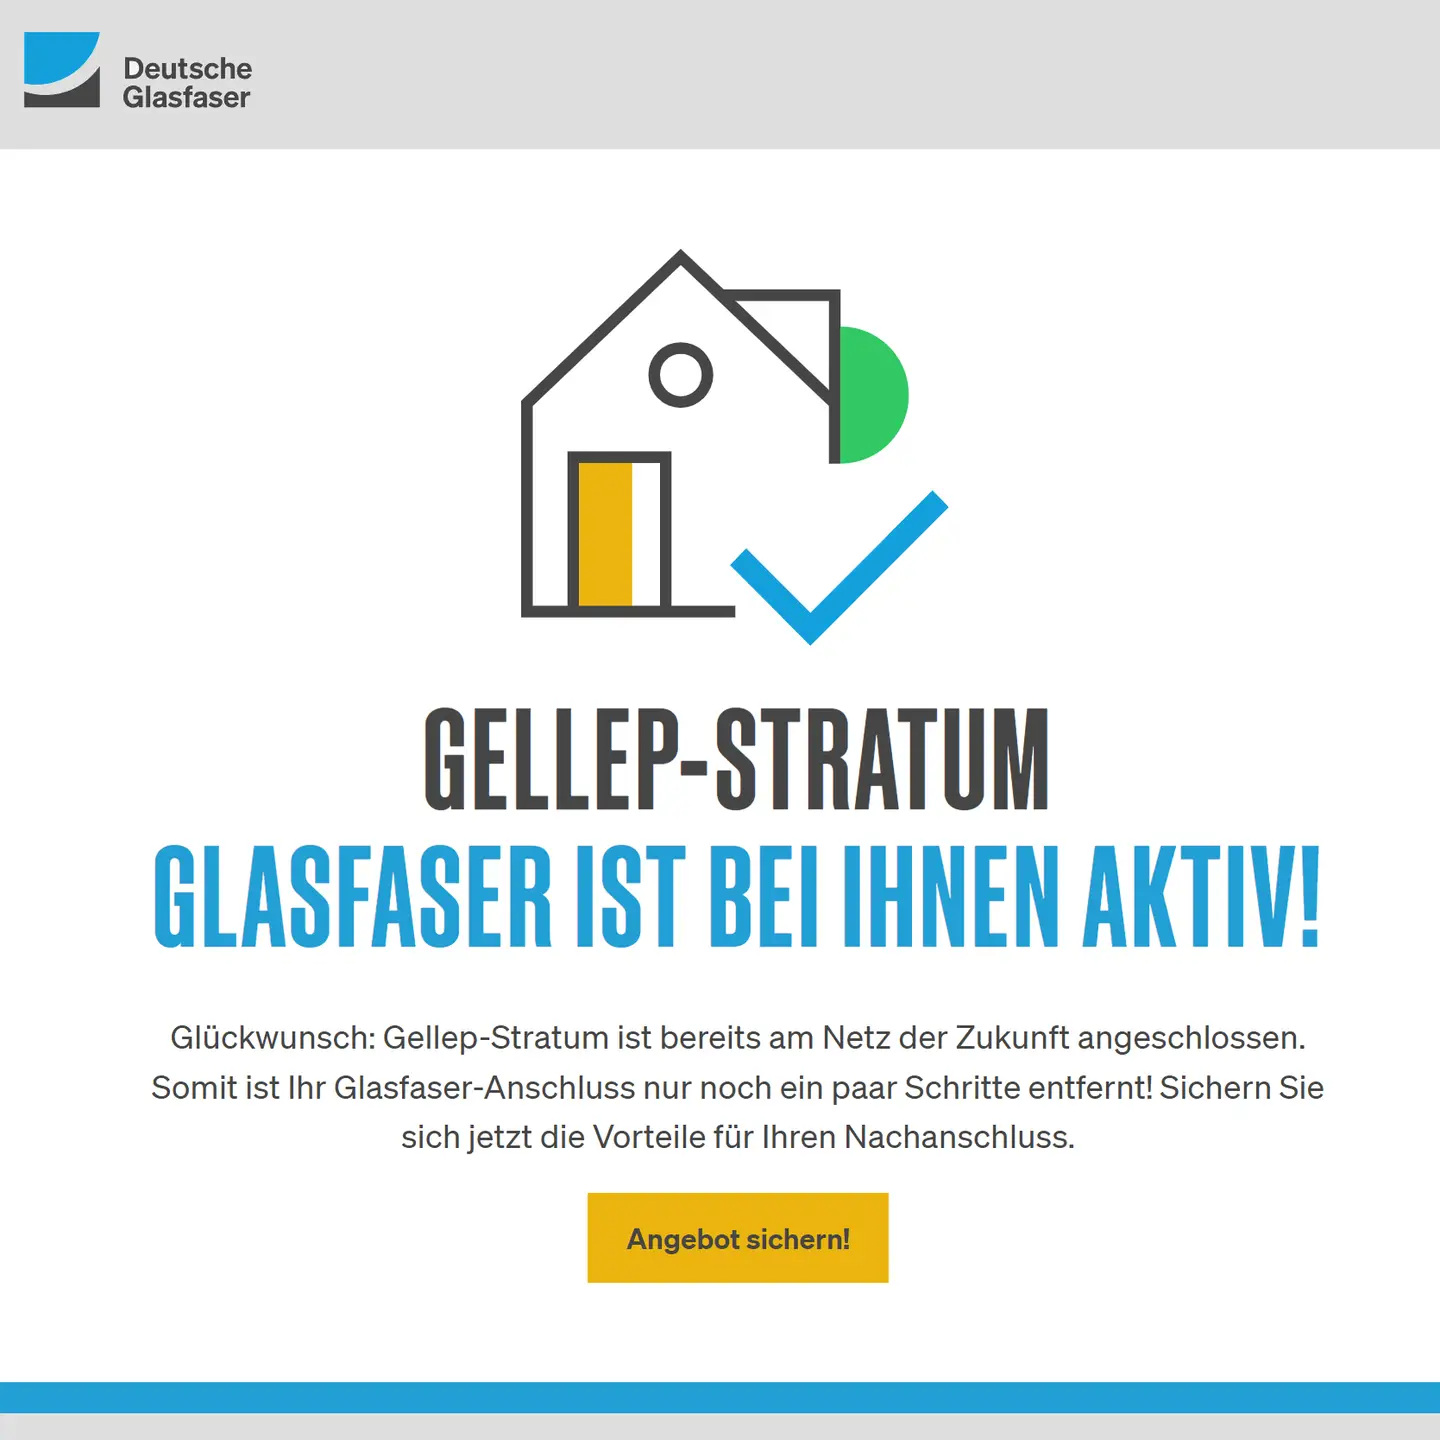 Screenshot der Seite "Netz aktiv". Logo DG, Darunter Piktogramm Haus, darunter Ortsnahme und "Glasfaser ist bei Ihnen Aktiv. Gratulation und Hinweis auf die Möglichkeit, auch aufs netz zu kommen 